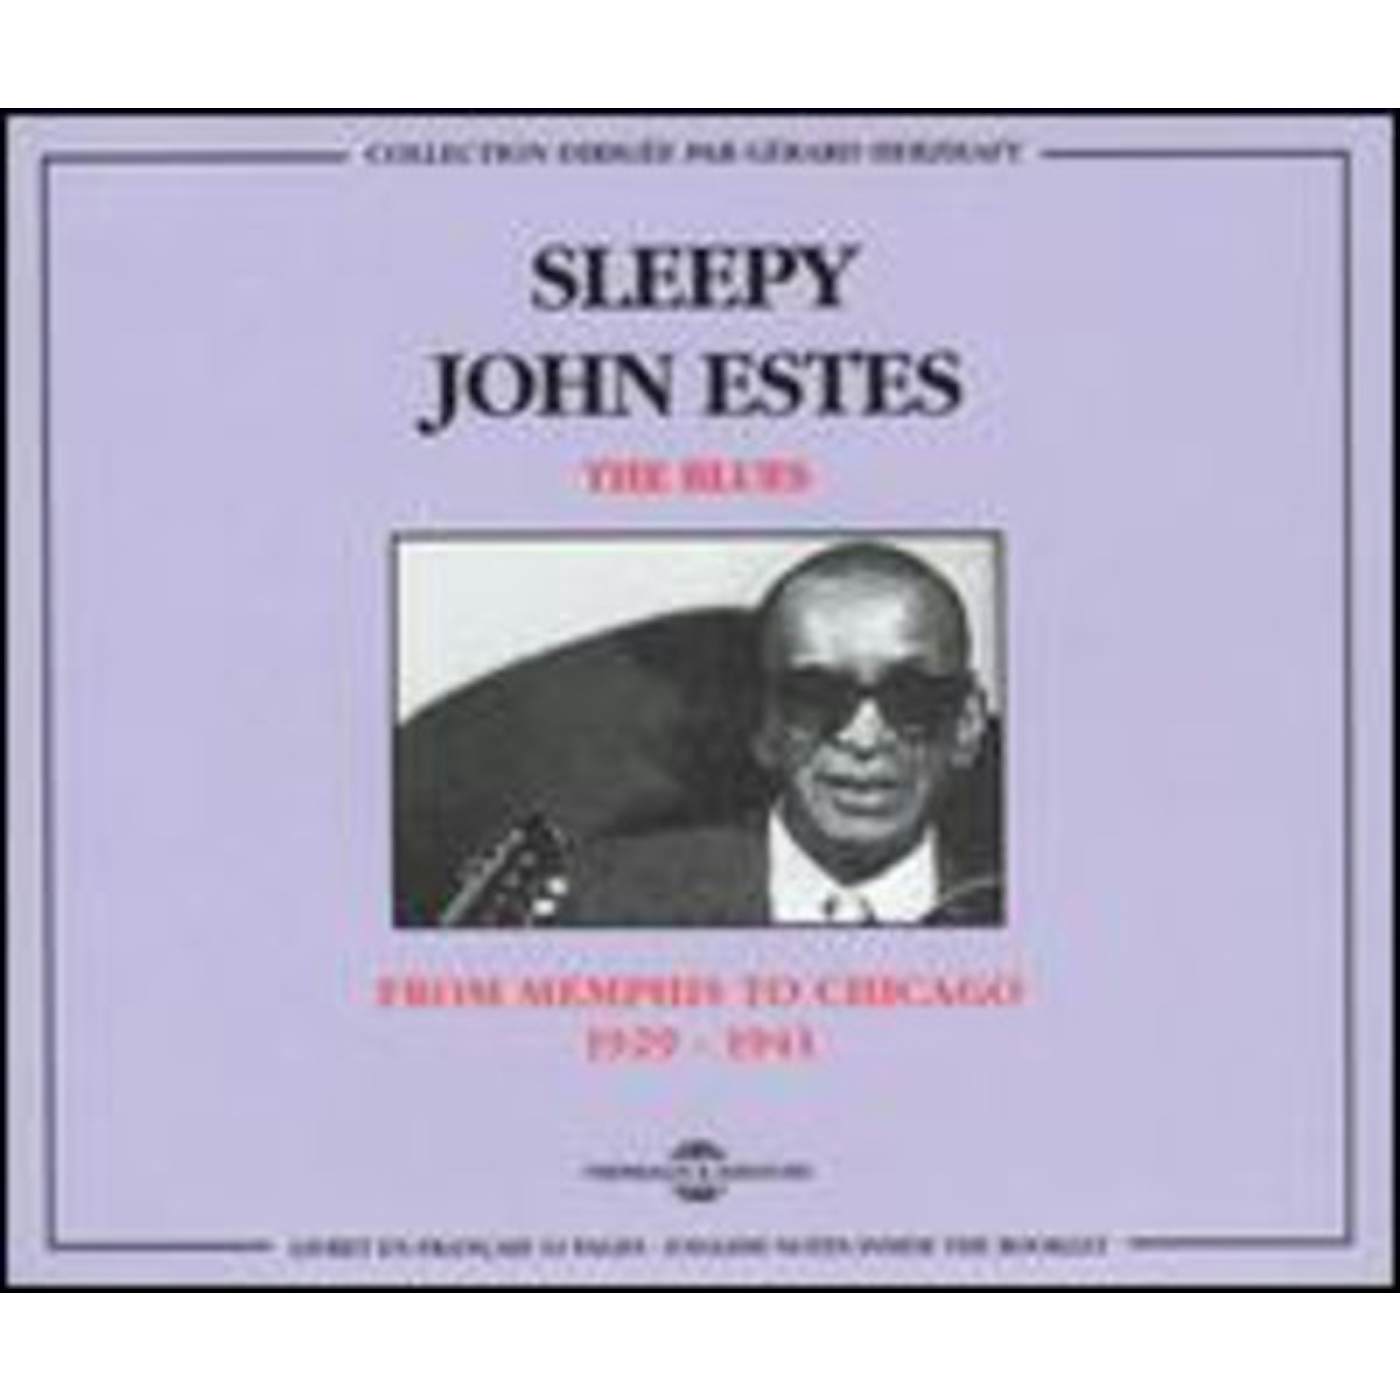 Sleepy John Estes FROM MEMPHIS TO CHICAGO 1929-1941 CD